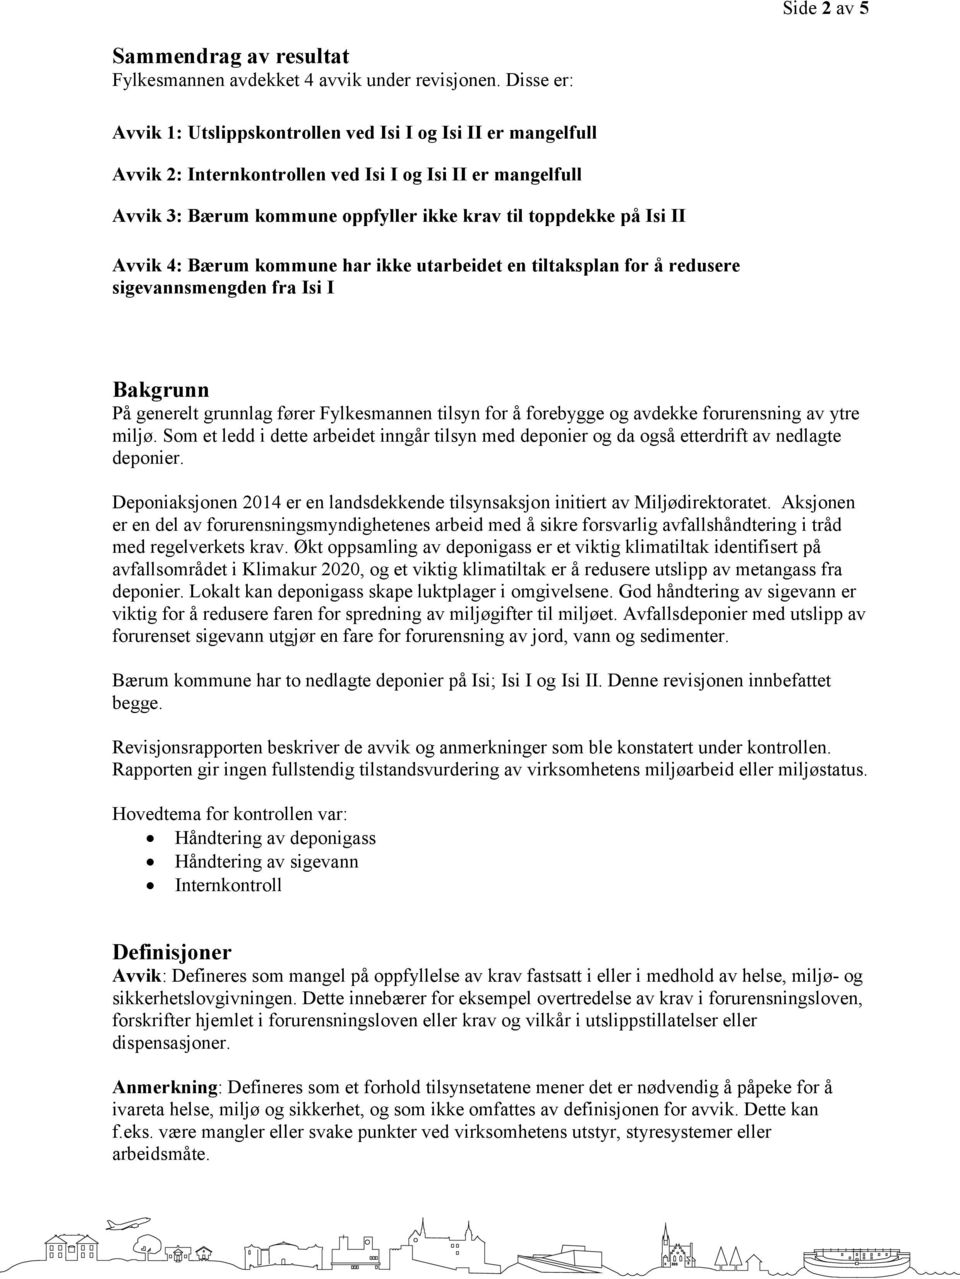 Avvik 4: Bærum kommune har ikke utarbeidet en tiltaksplan for å redusere sigevannsmengden fra Isi I Bakgrunn På generelt grunnlag fører Fylkesmannen tilsyn for å forebygge og avdekke forurensning av